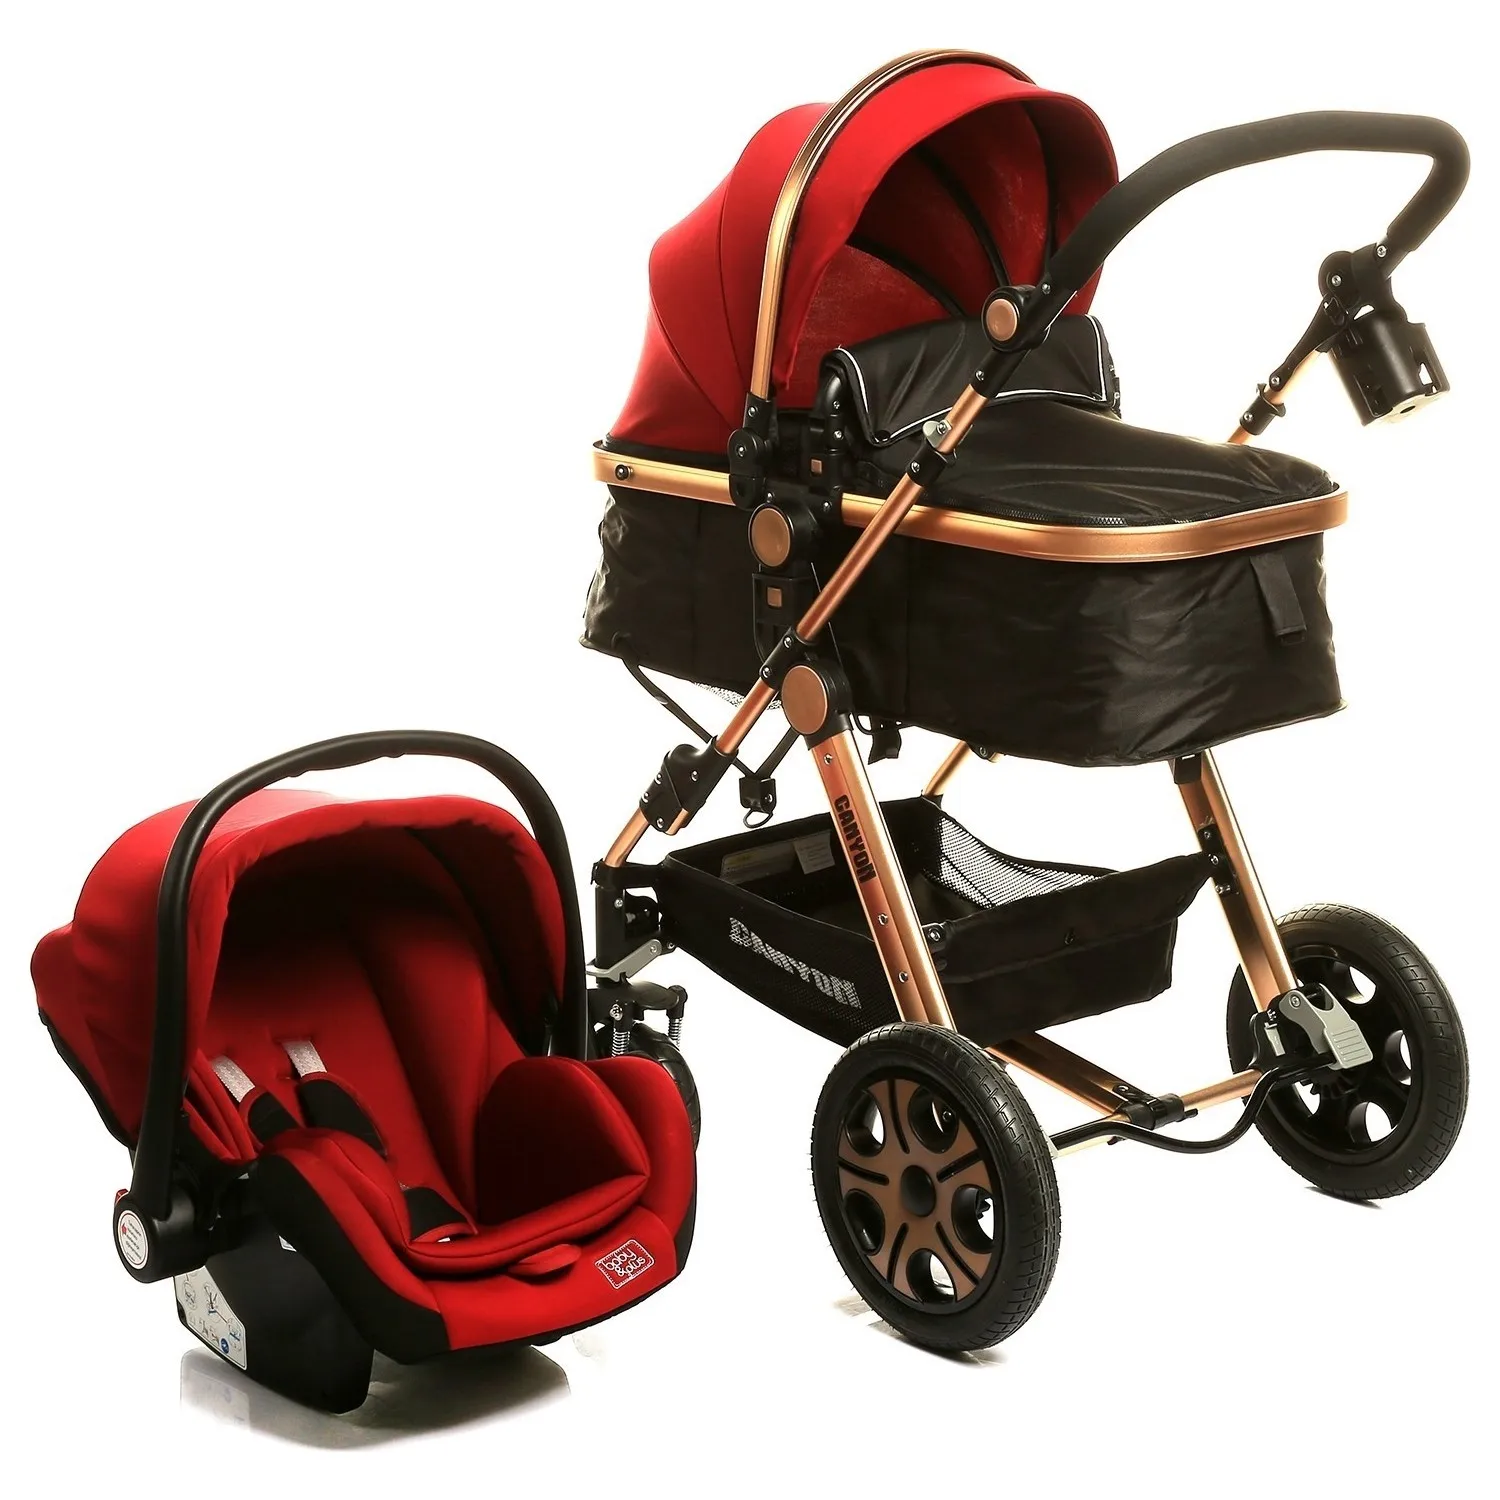 

Canyon Travel Sistem V2 Bebek Arabası Puset Katlanabilir Bebek Arabası bebek arabası hafif yenidoğan yeni anne bebek arabası 3 i